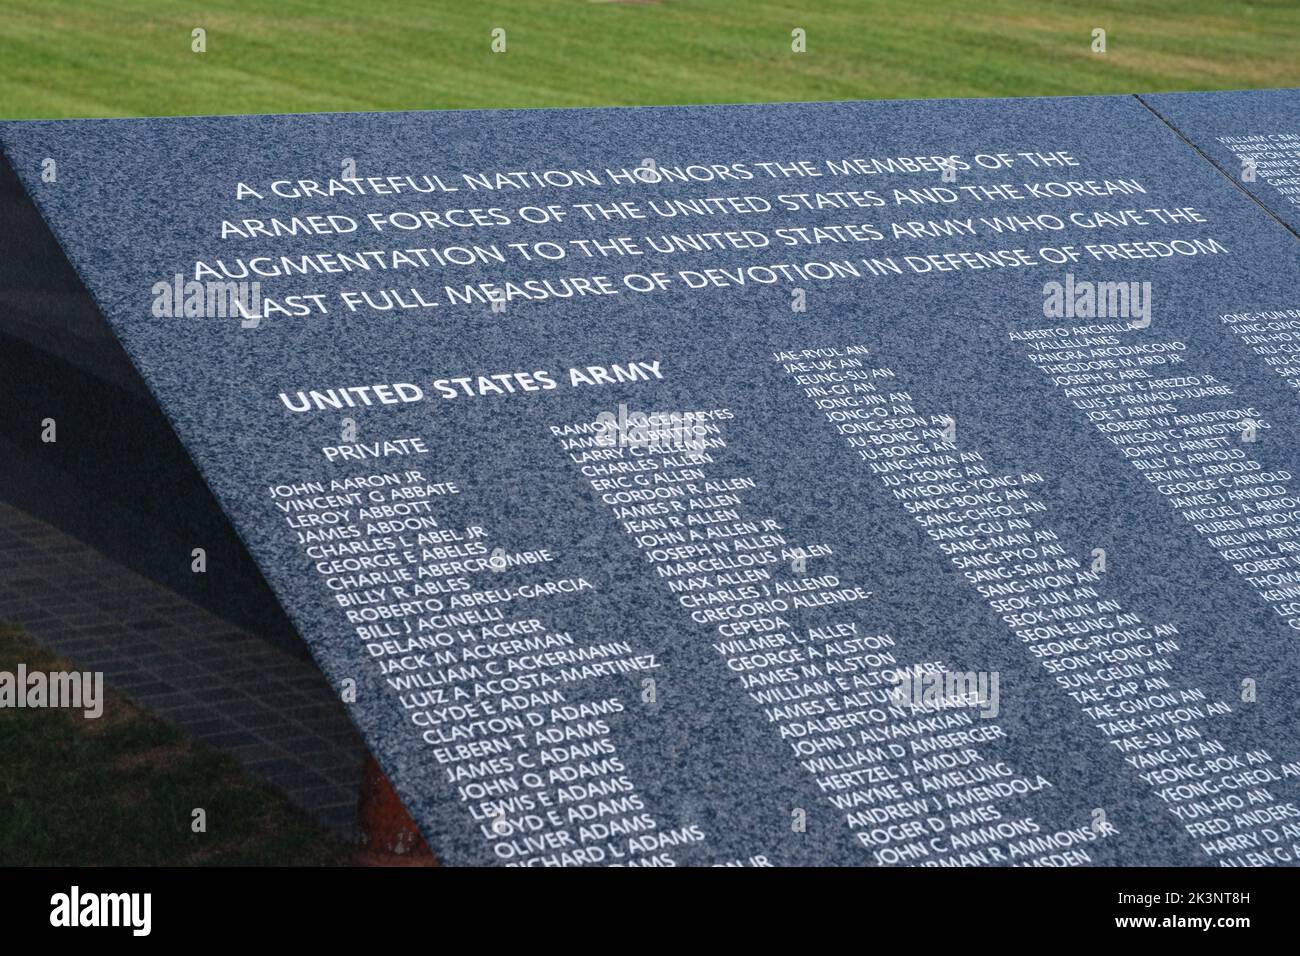 Koreanisches Kriegsdenkmal, Wall of Remembrance mit Namen der Toten der amerikanischen und koreanischen Augmentationskräfte, Washington, DC, USA. Stockfoto